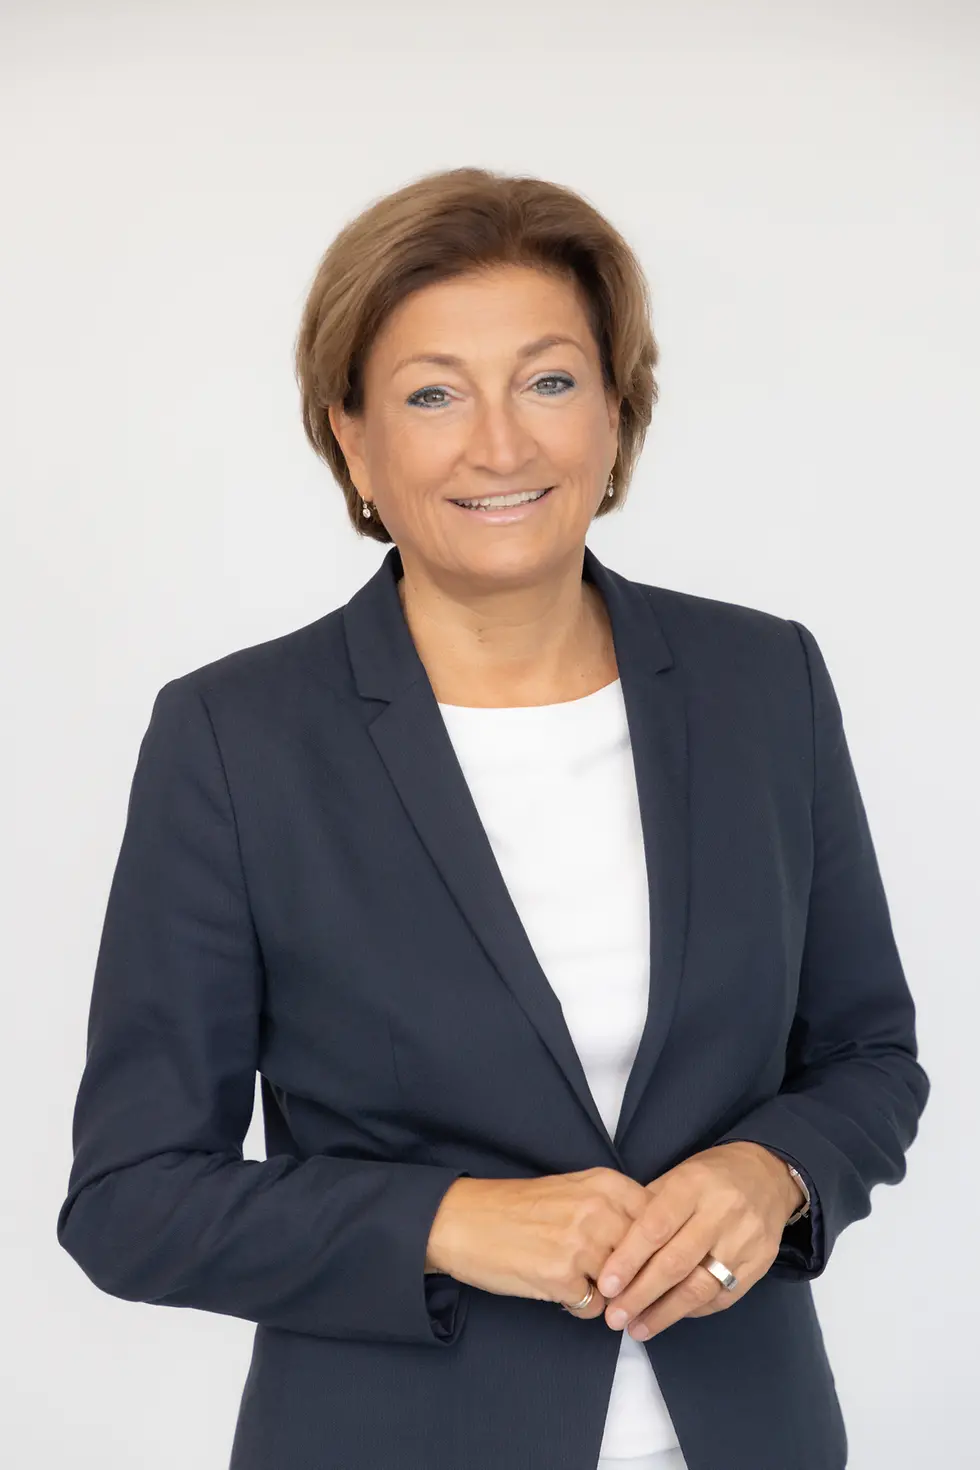 
Mag. Birgit Rechberger-Krammer
Präsidentin von Henkel in Österreich
Senior Corporate Vice President Laundry & Home Care und Beauty Care Europe